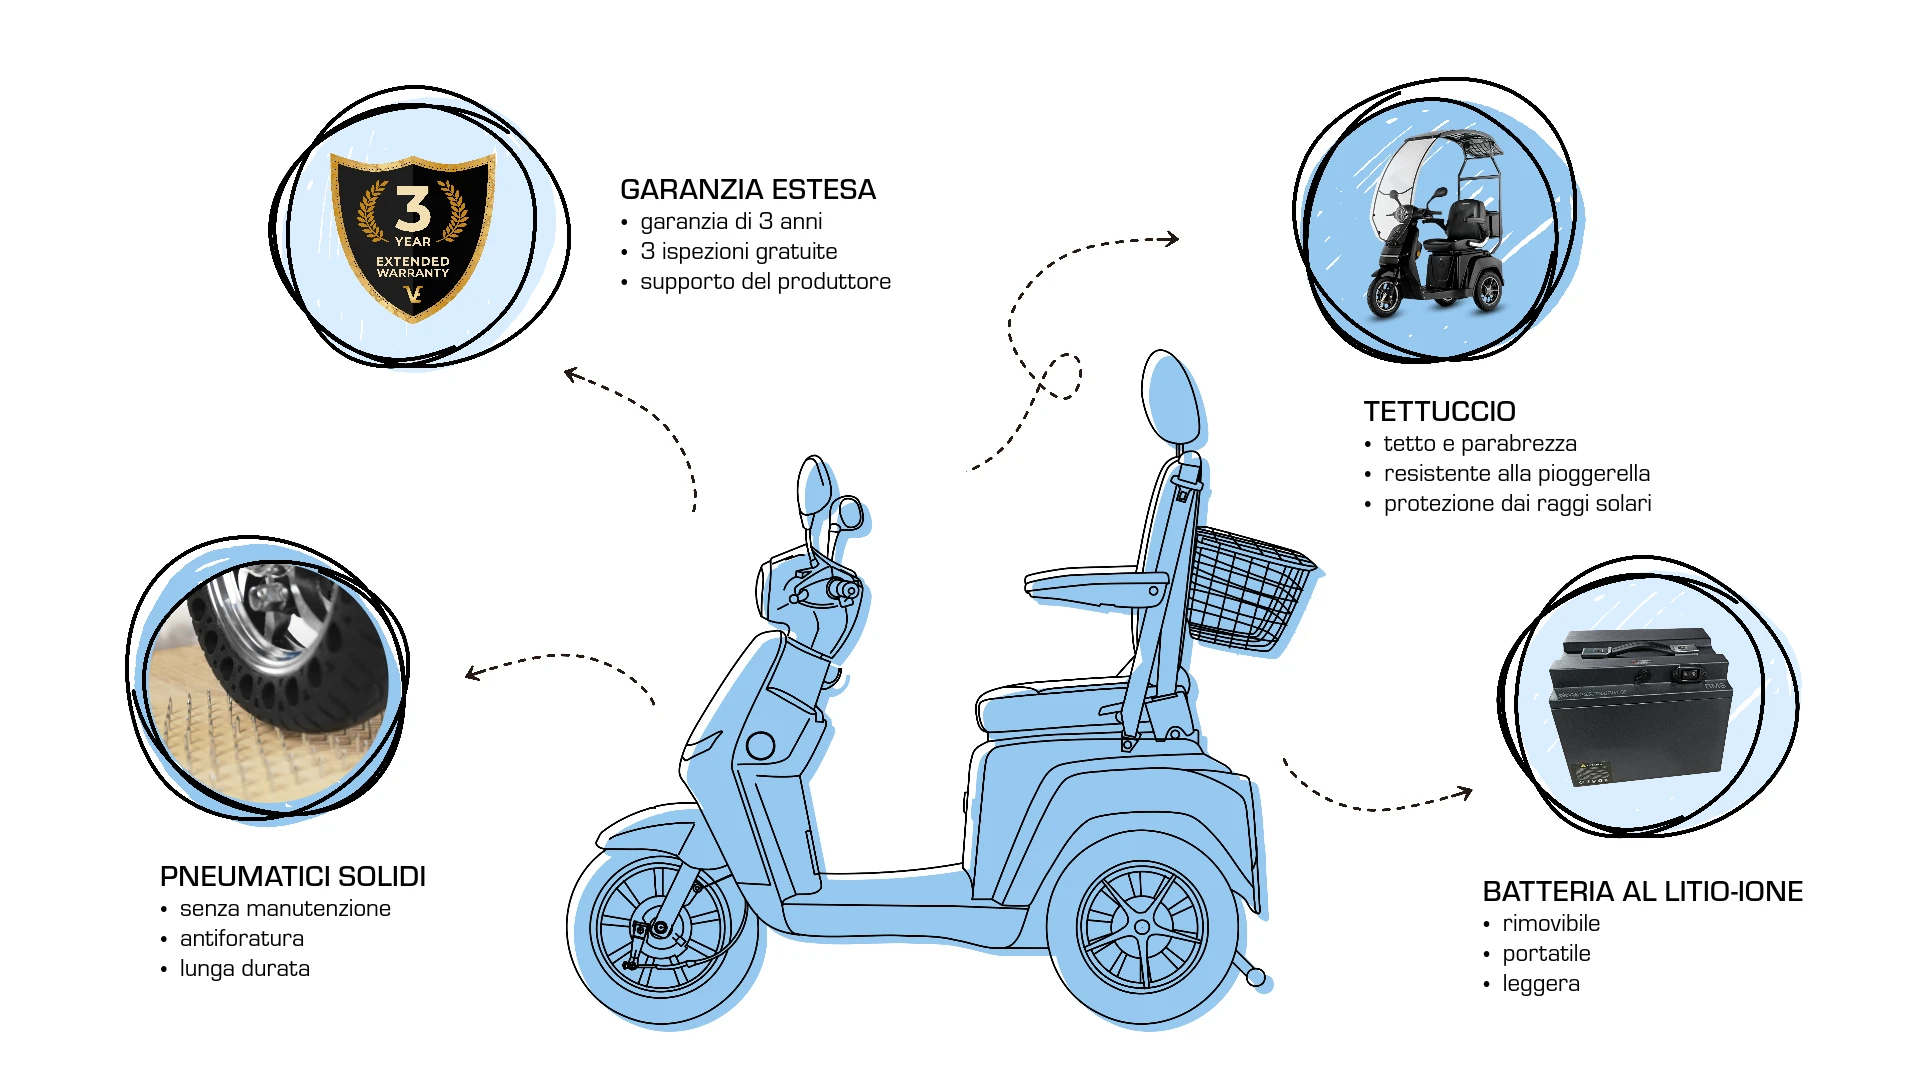 Veleco TURRIS con sedile del capitano, extra, aggiornamenti, pneumatici solidi per scooter di mobilità, estensione della garanzia, batteria agli ioni di litio, tettuccio